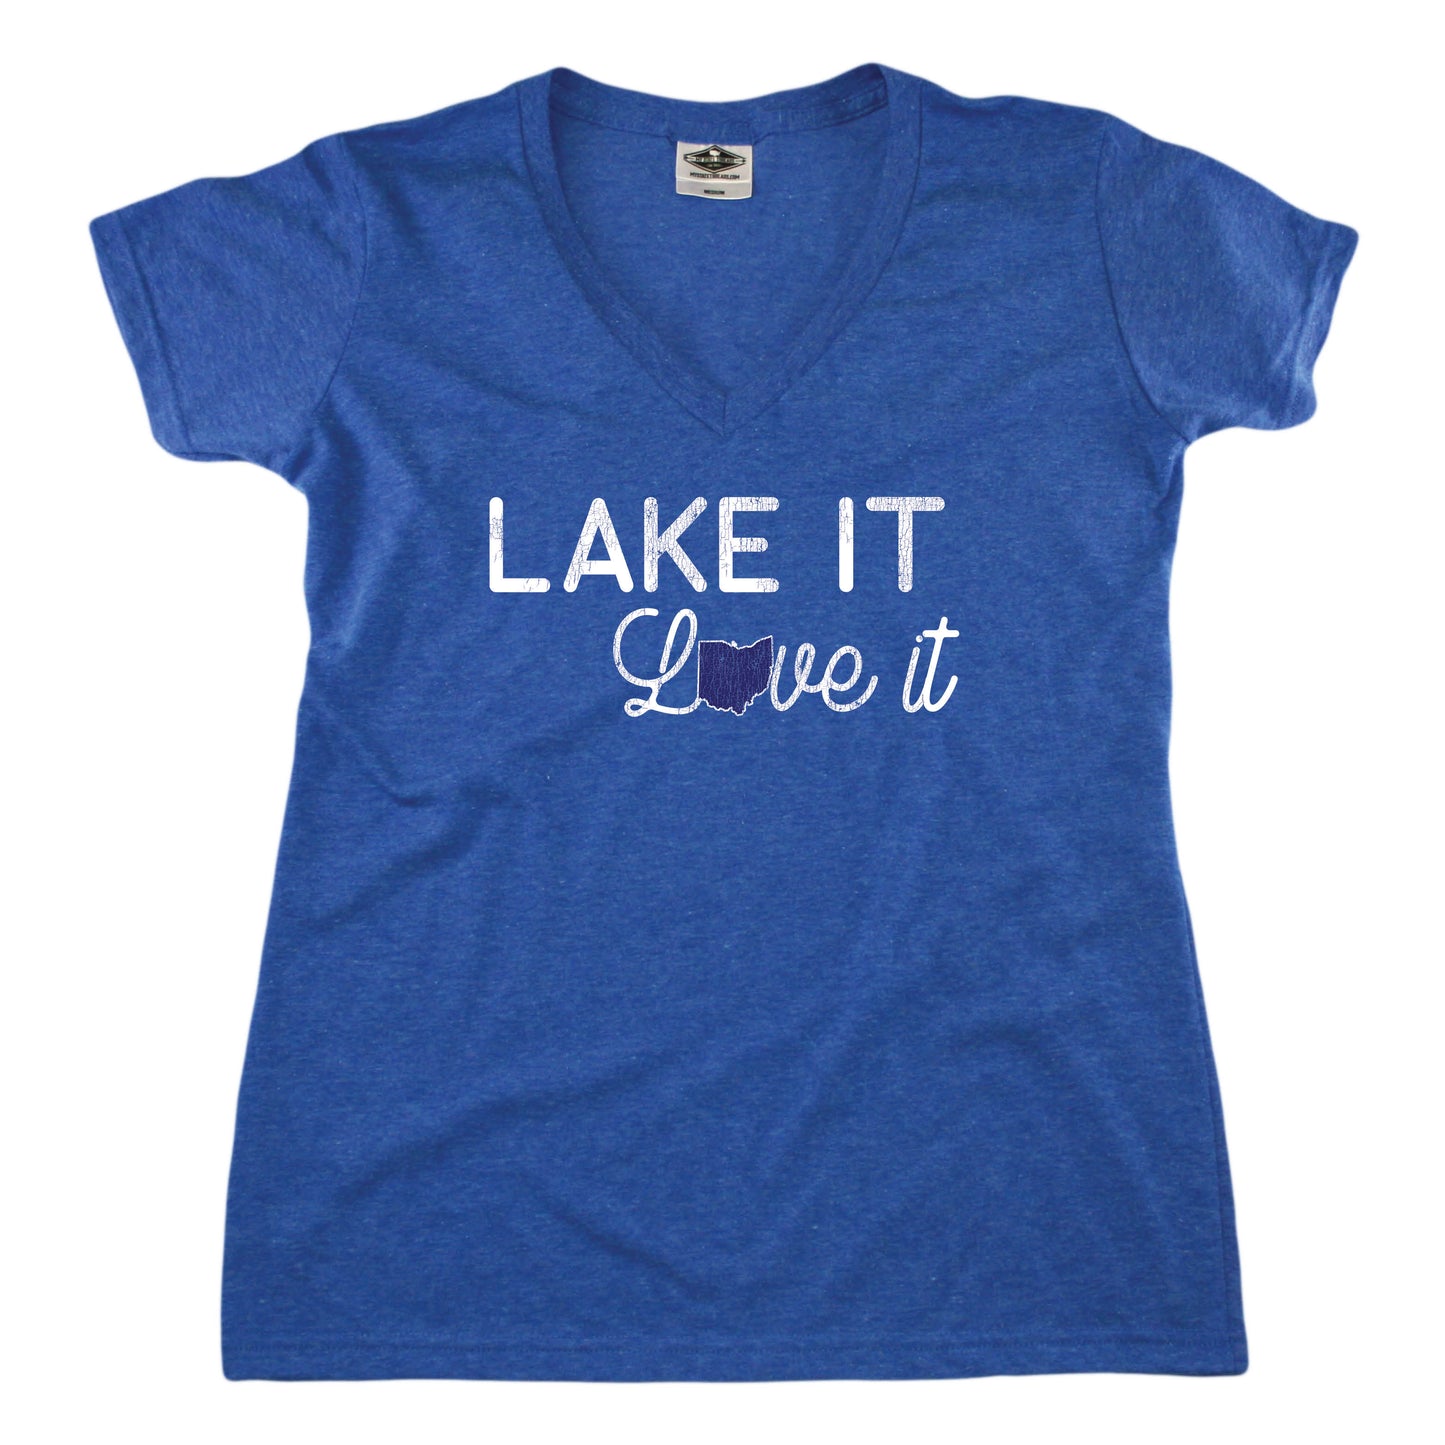 Ohio Lake it Love it - Ladies' Tee